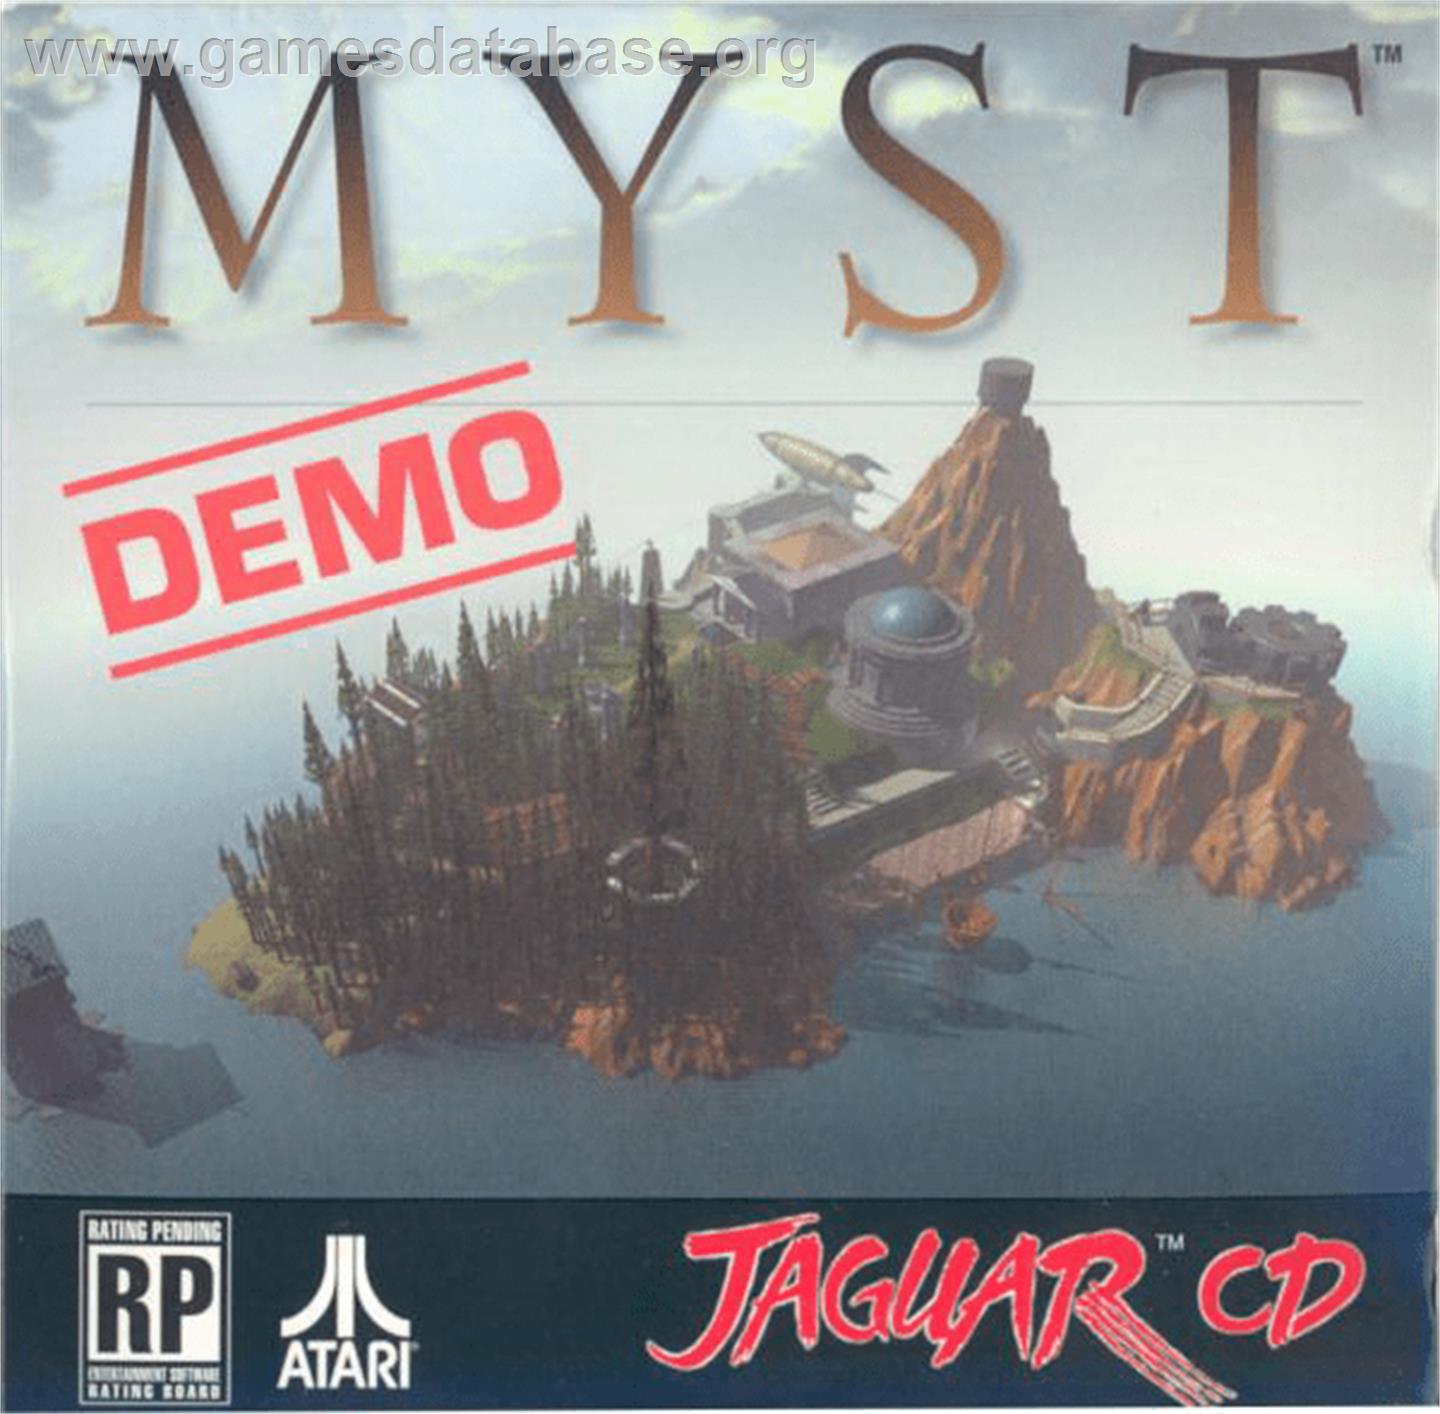 Myst Demo - Atari Jaguar CD - Artwork - Box